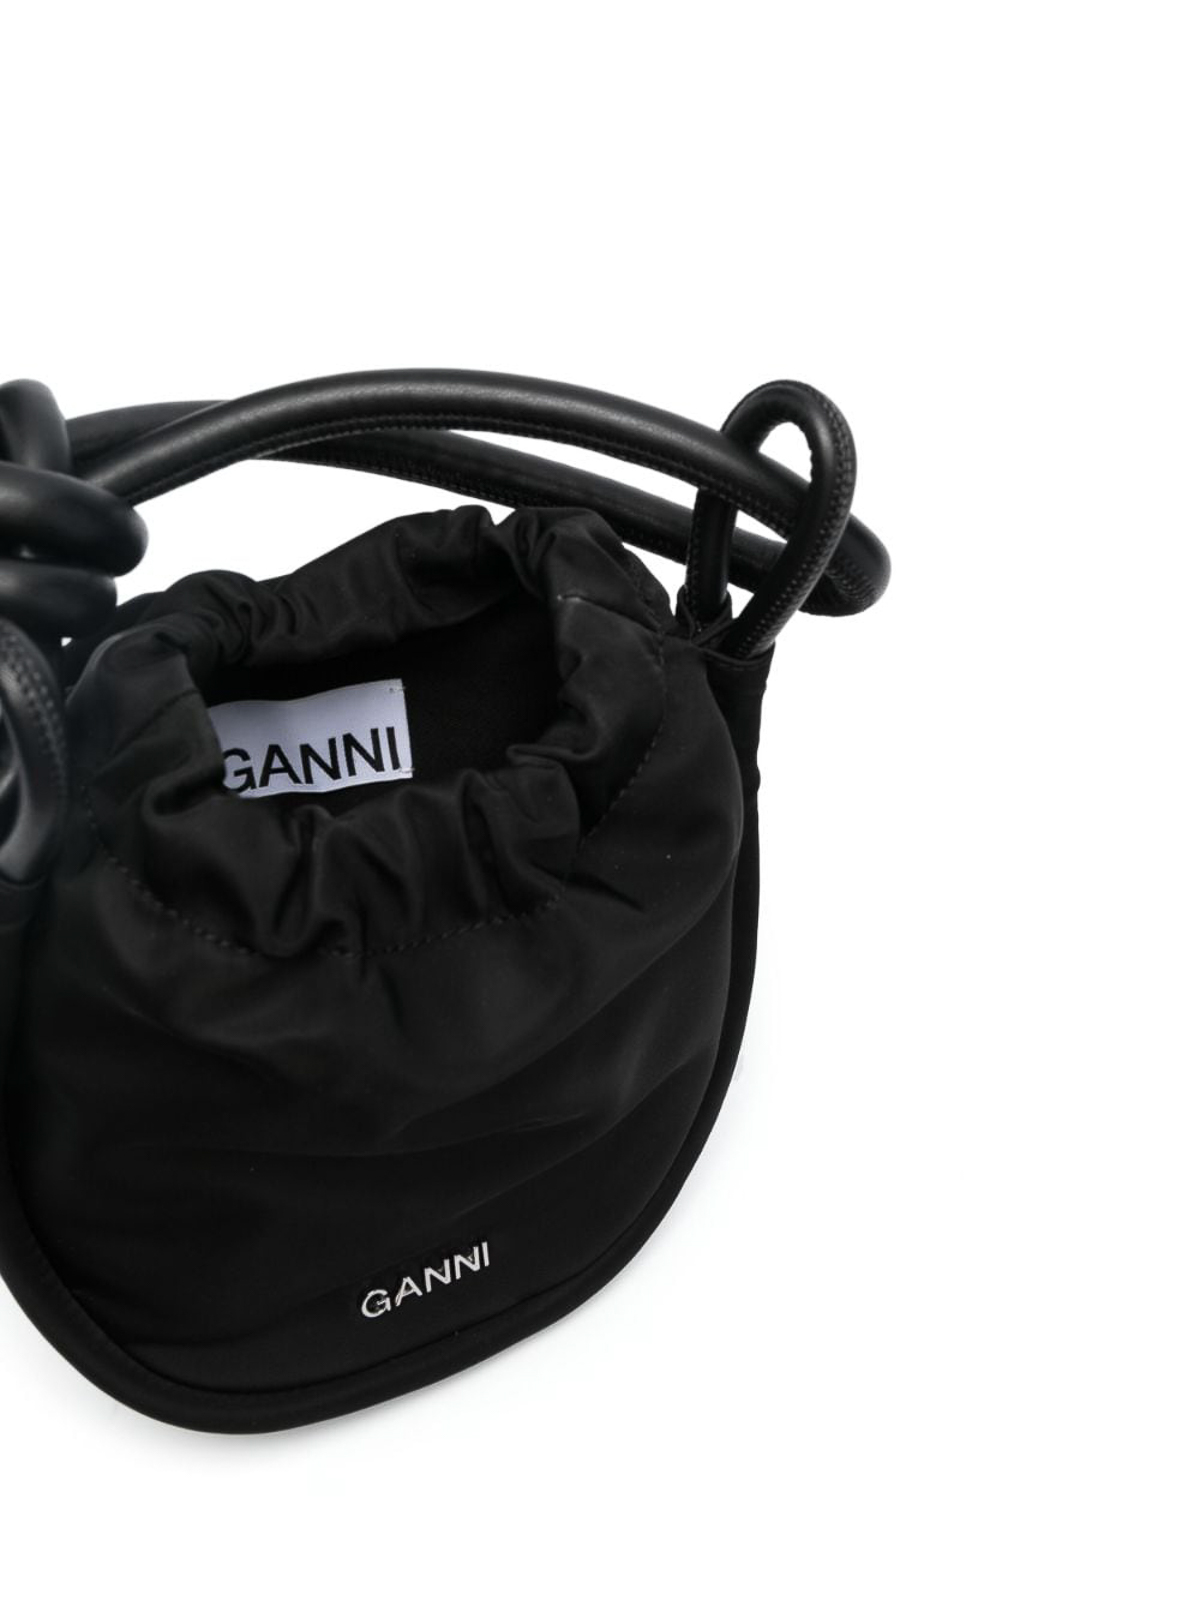 Ganni Mini Knot Nylon Cross Body Bag Black